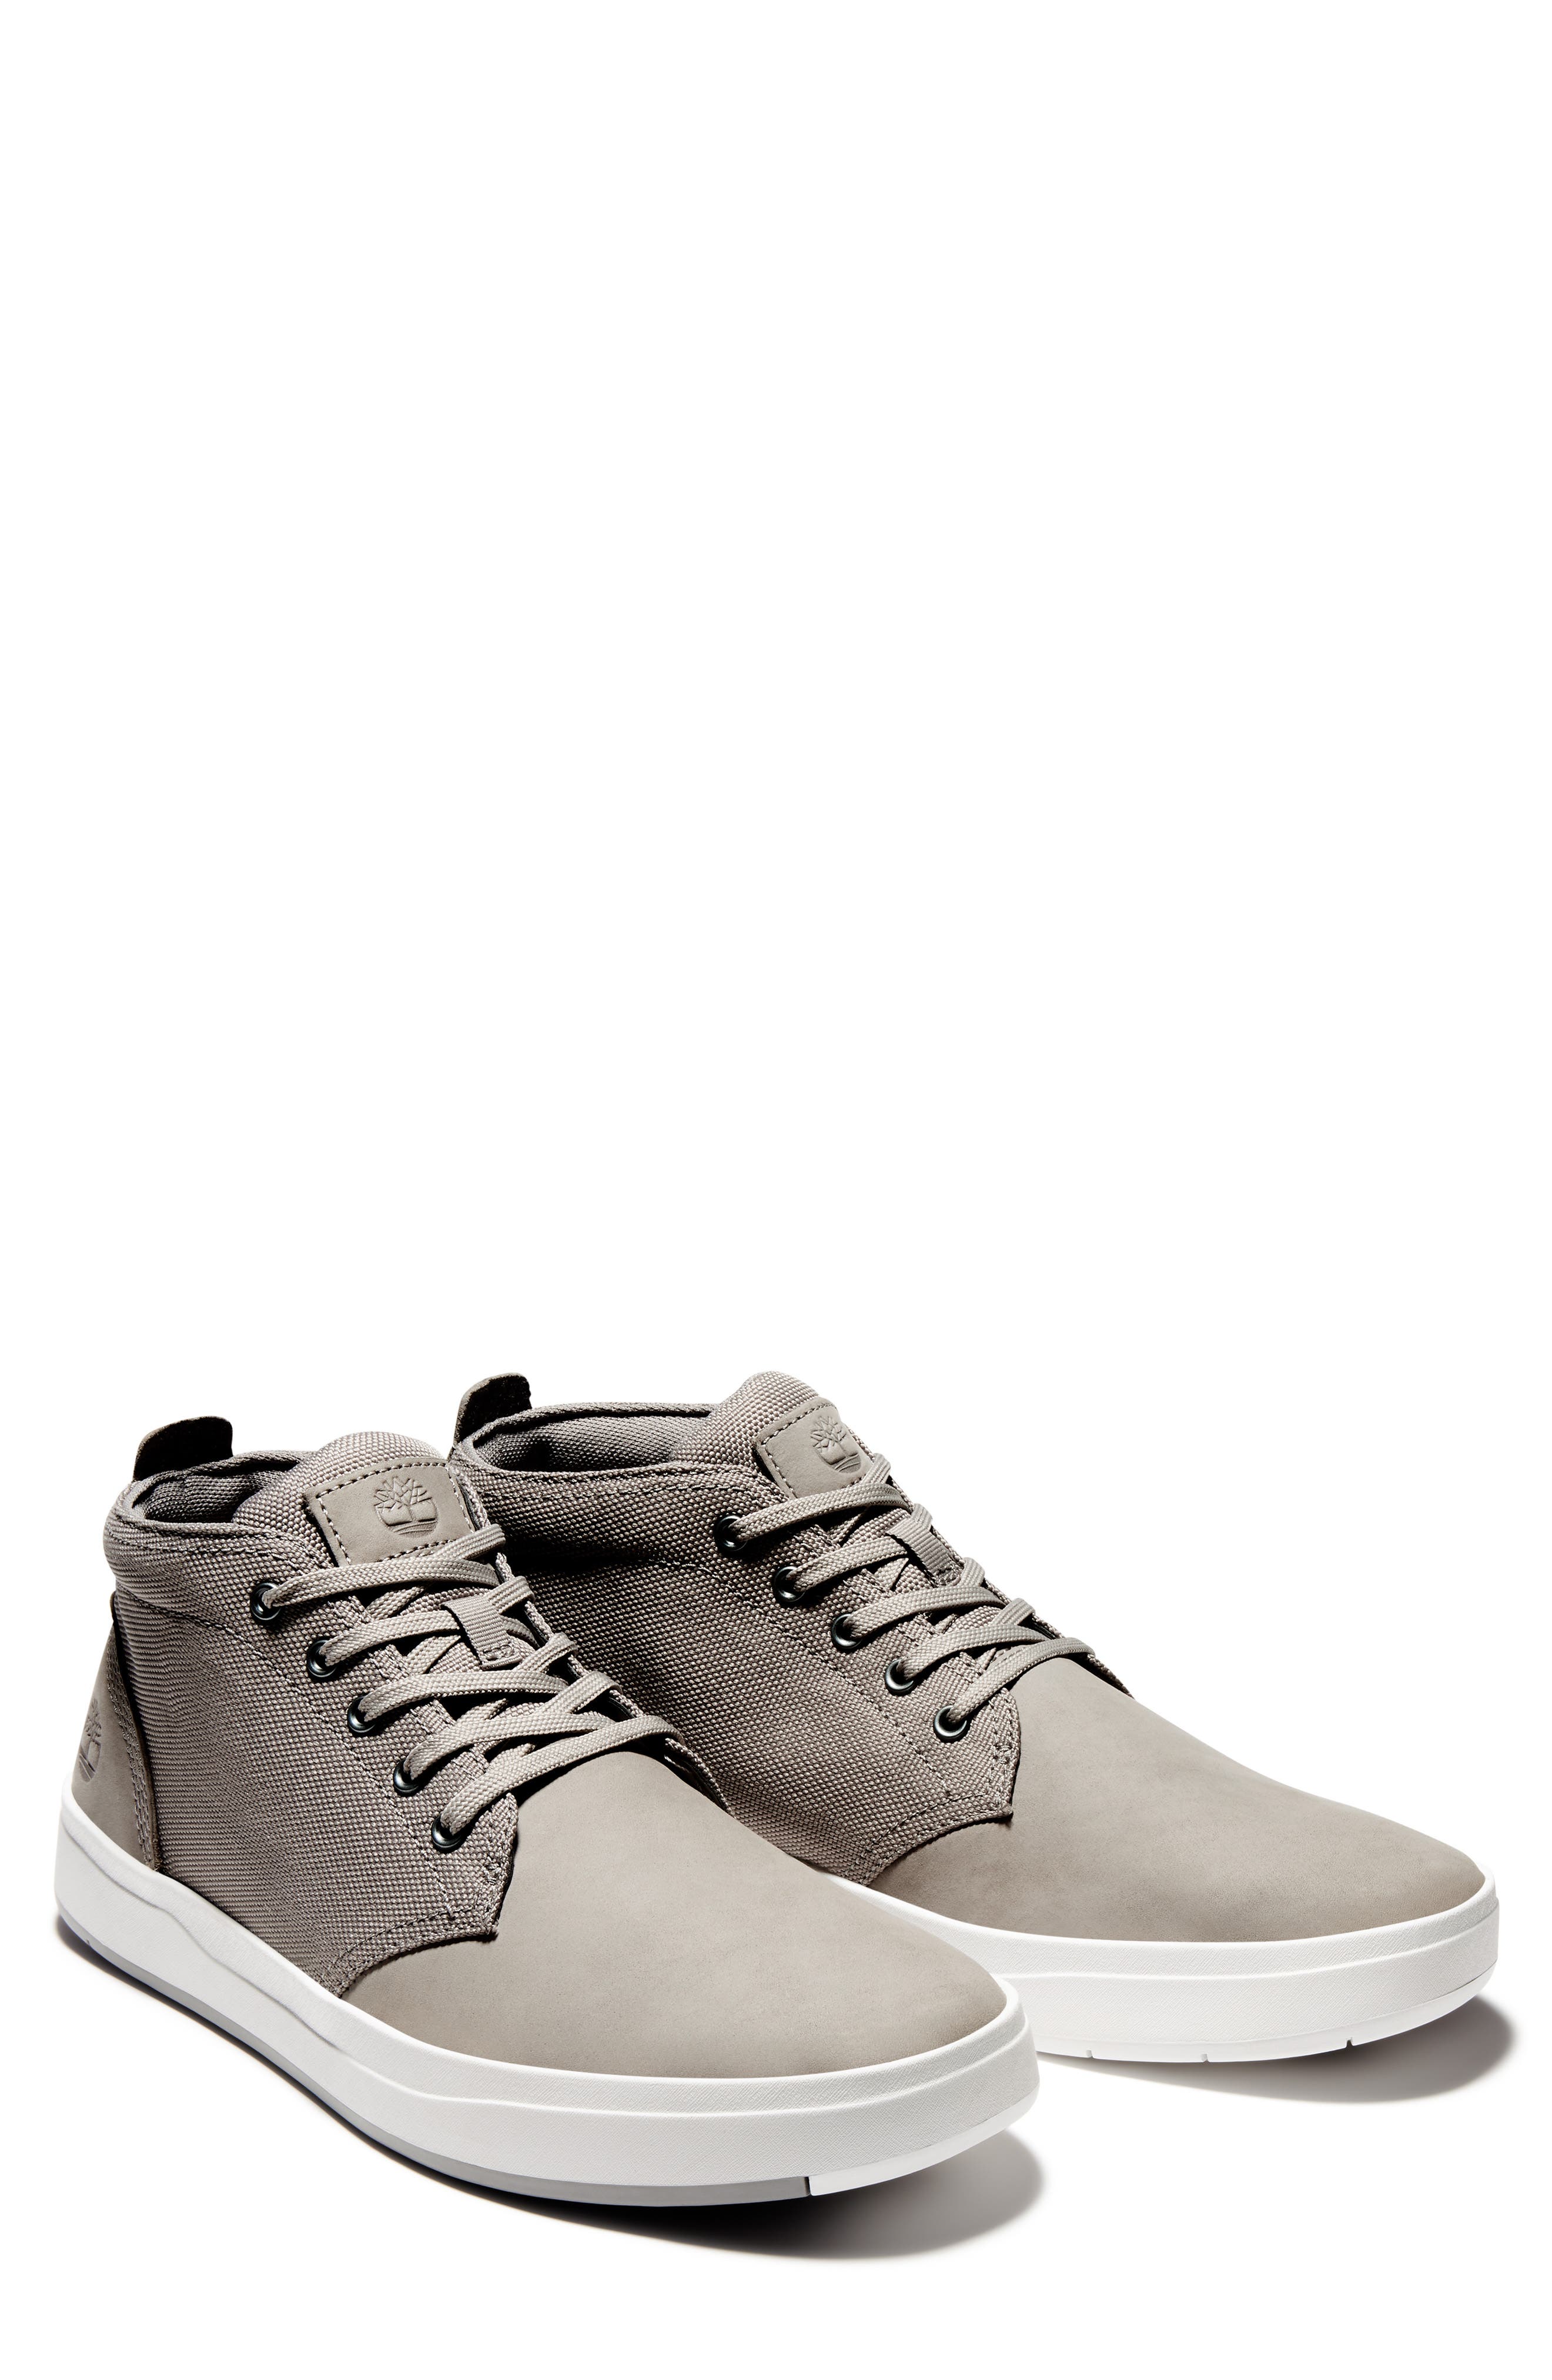 men's gray casual sneakers